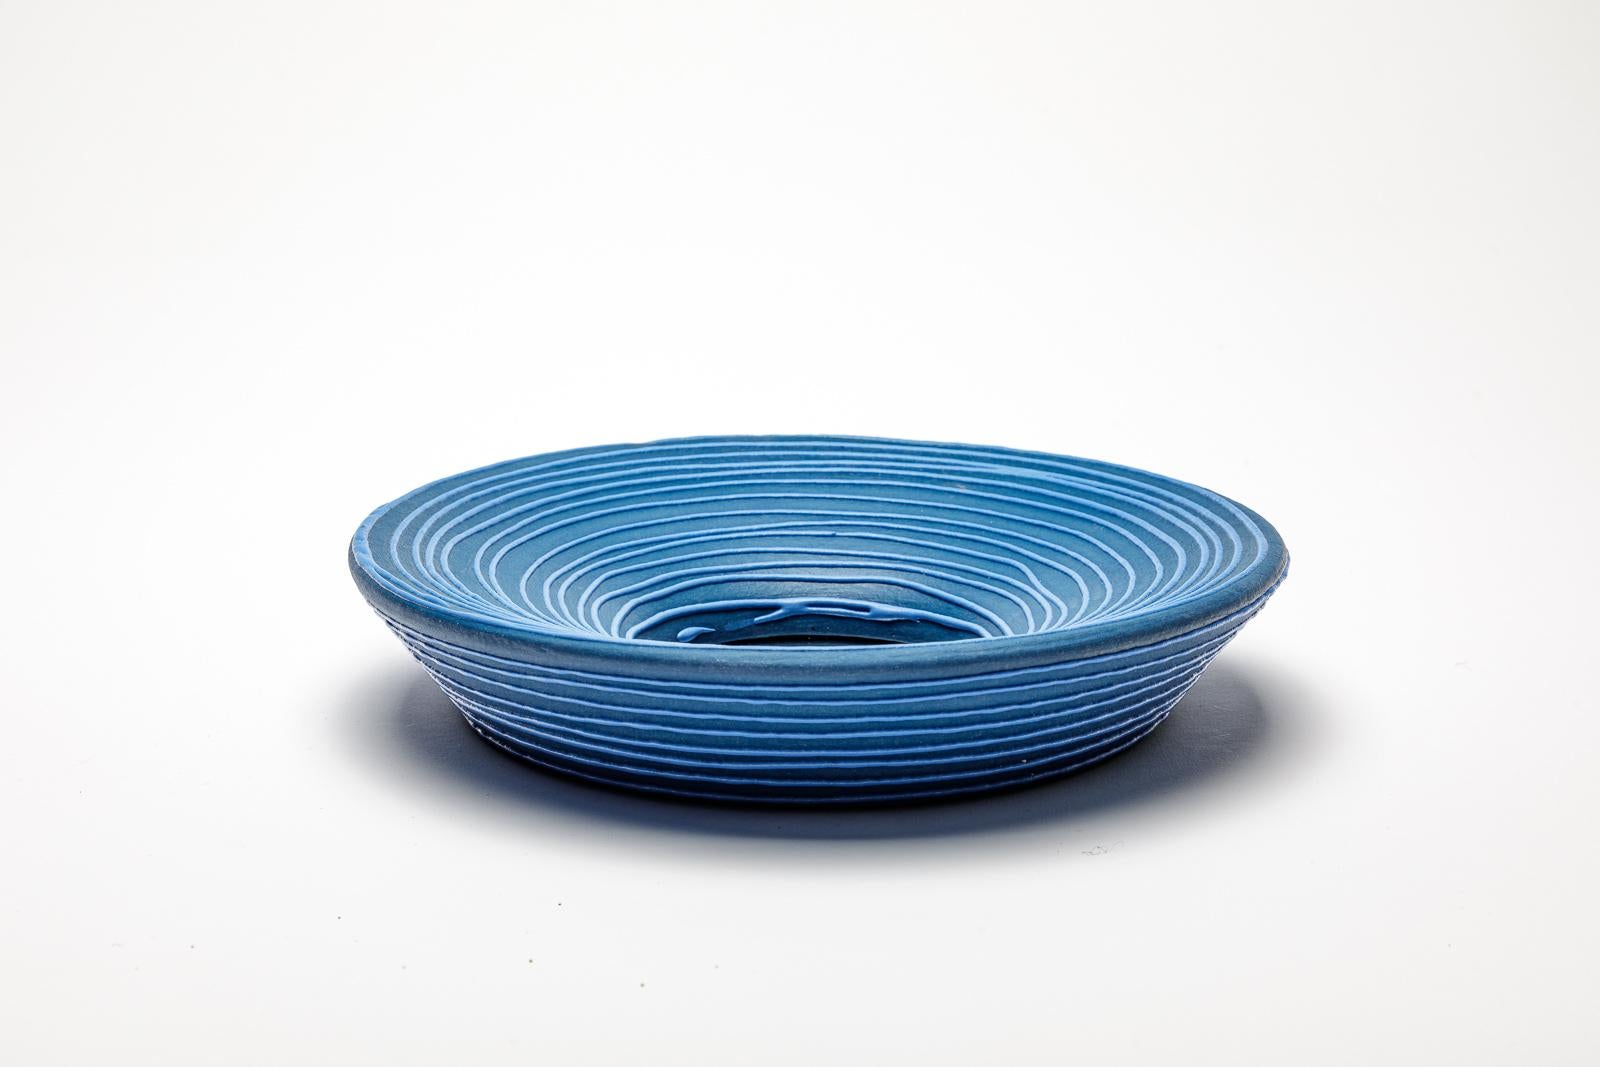 Blau glasierter Keramikspiegel von Mia Jensen.
Künstlersignatur unter dem Sockel. CIRCA 2023-2024.
H : 1,6' x 9' Zoll.

